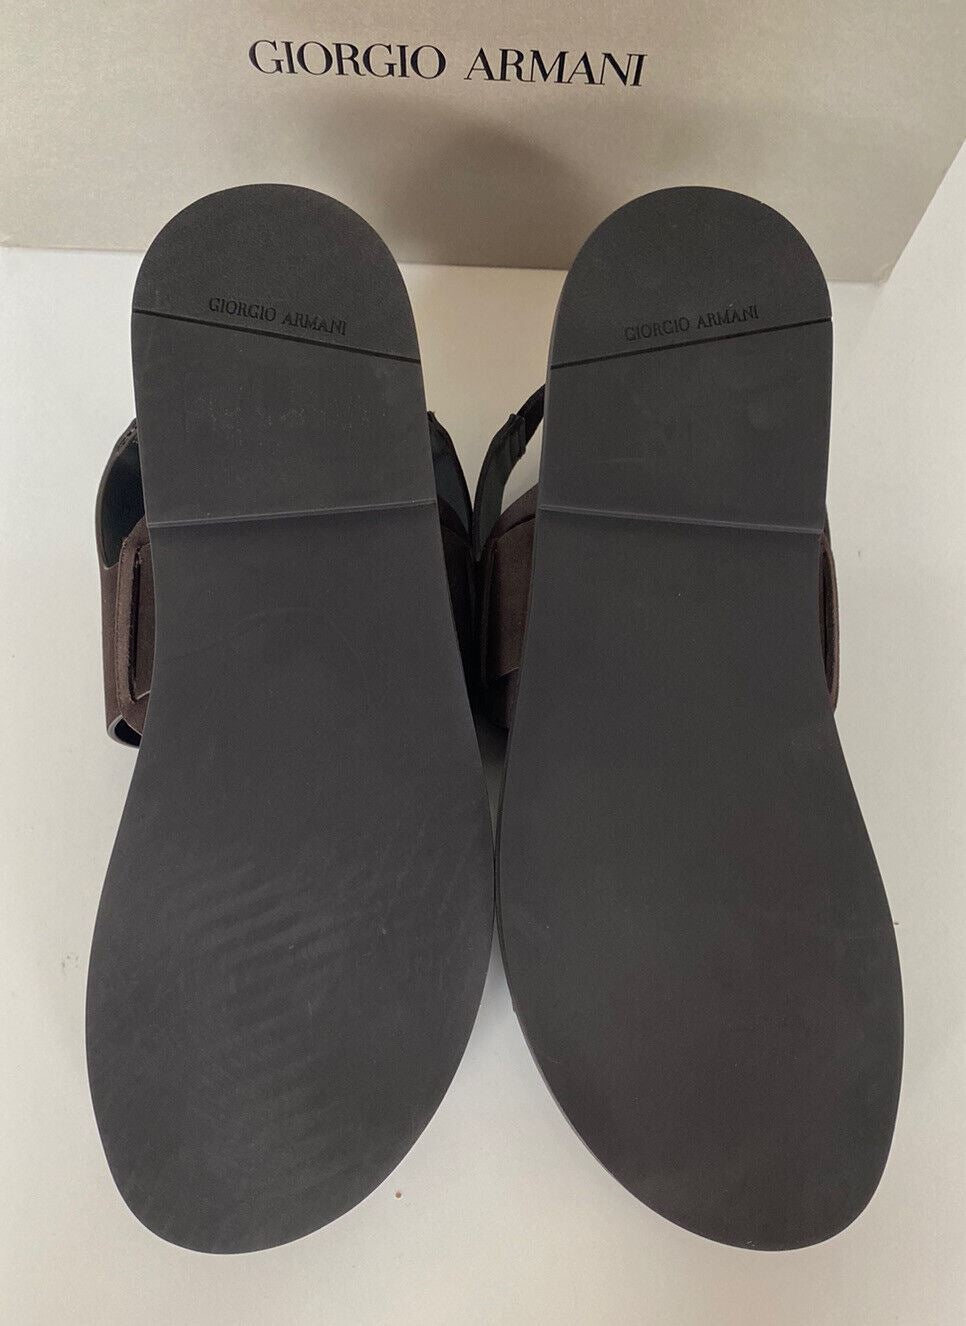 Коричневые замшевые/кожаные сандалии с ремешком на щиколотке Giorgio Armani 625 долларов США 10,5 США X2P064 